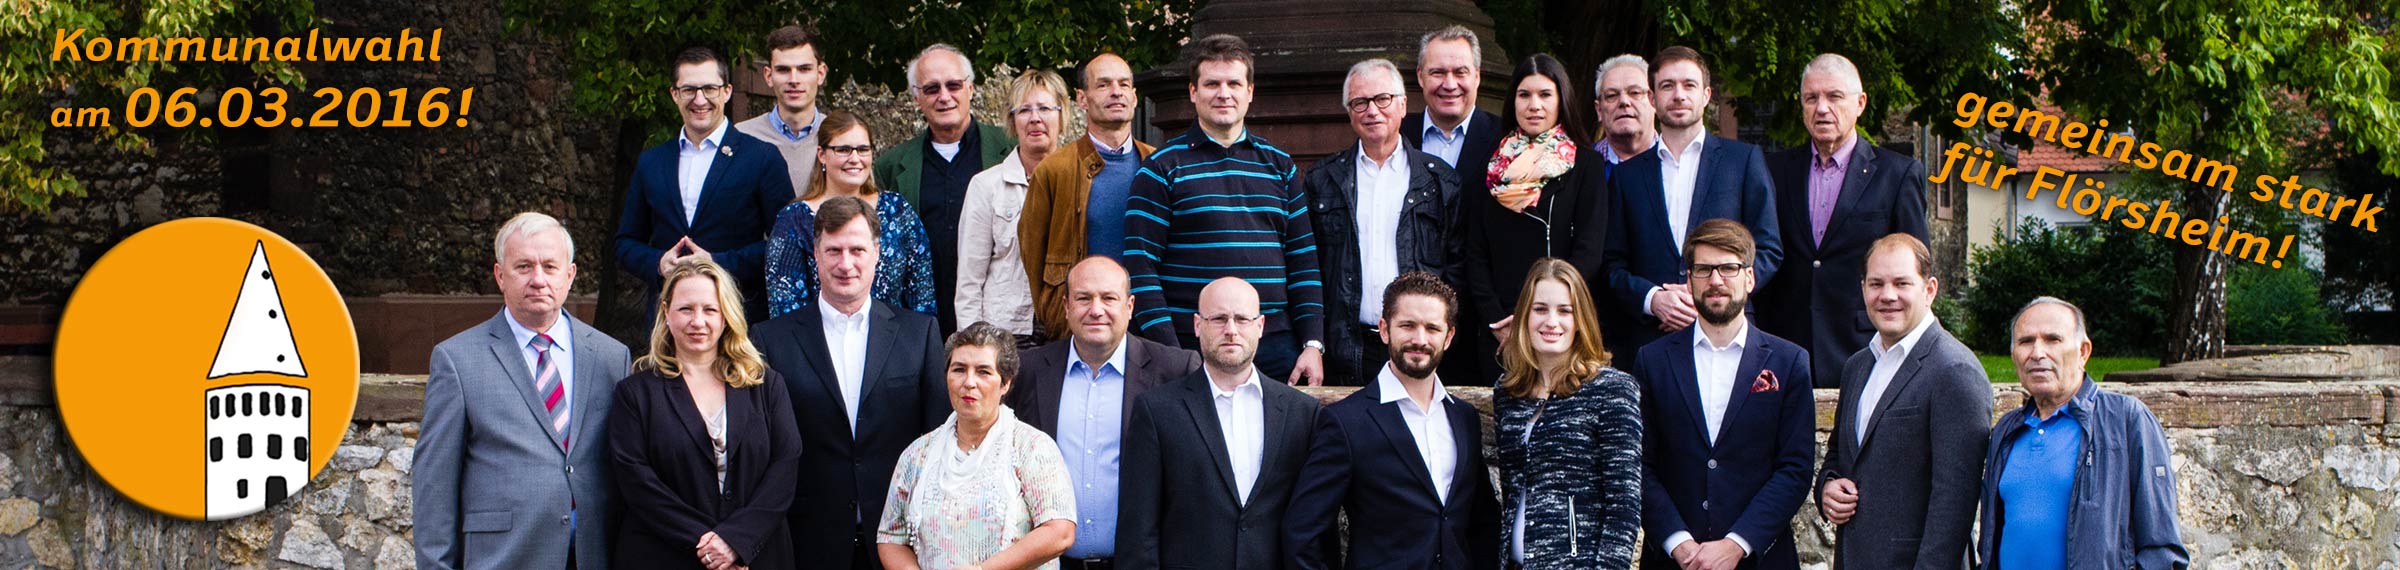 Kandidaten für die Flörsheimer Stadtverordnetenversammlung zur Kommunalwahl 2016